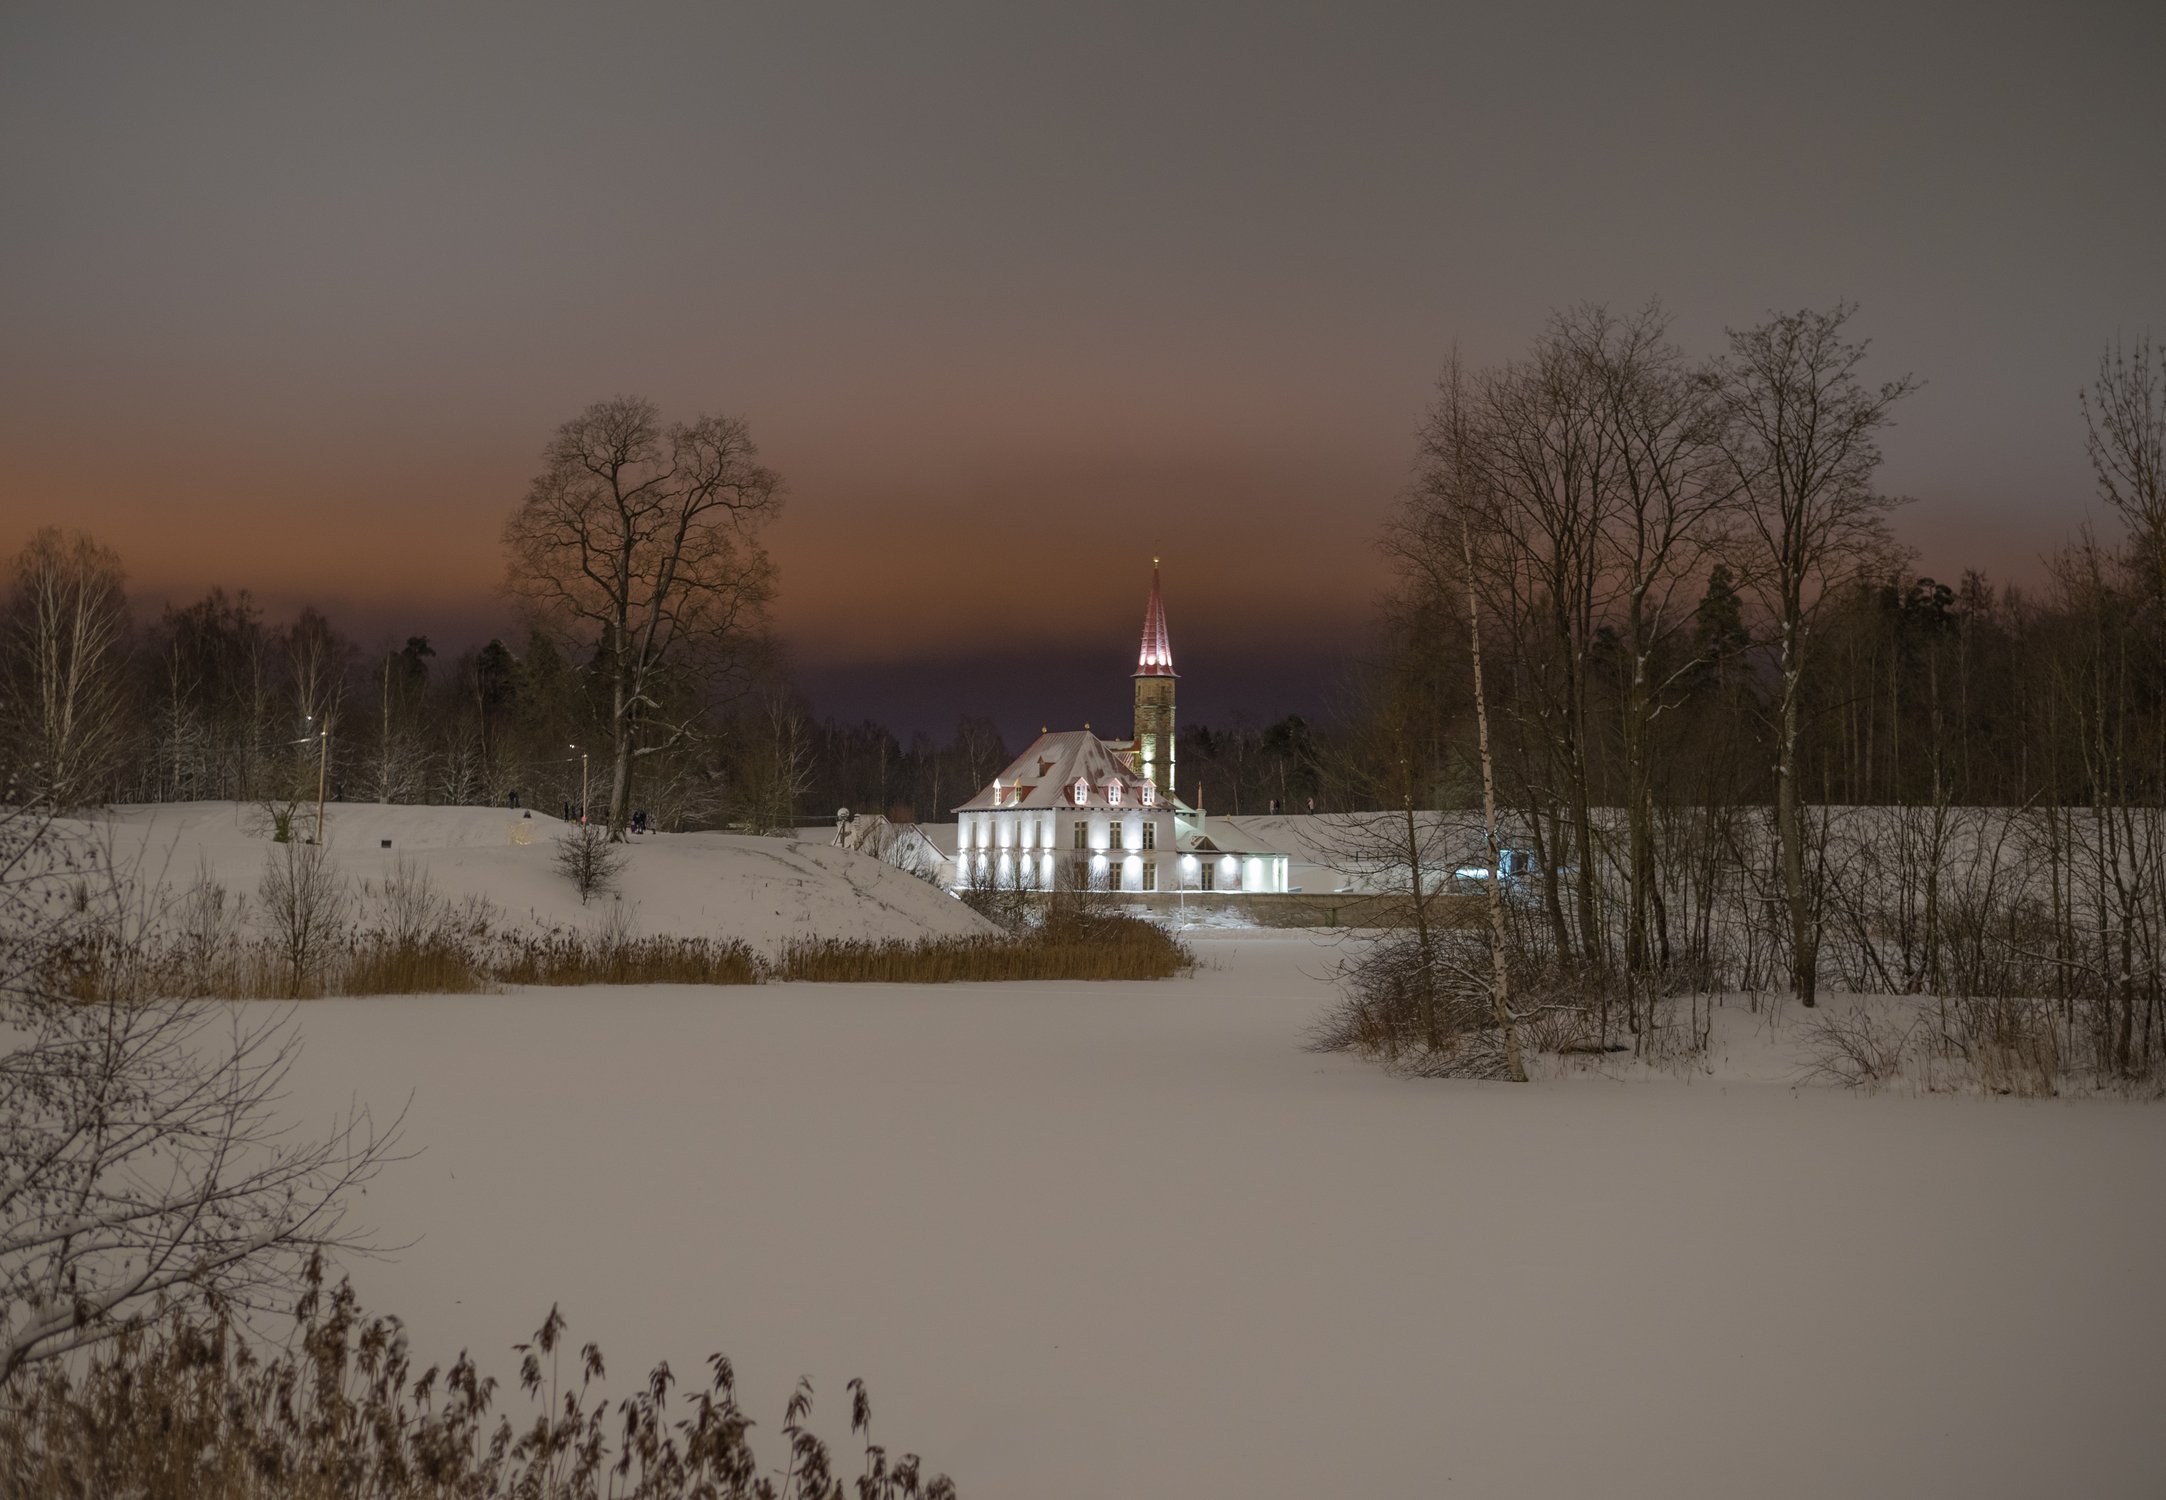 В снежном убранстве красуется Приоратский парк